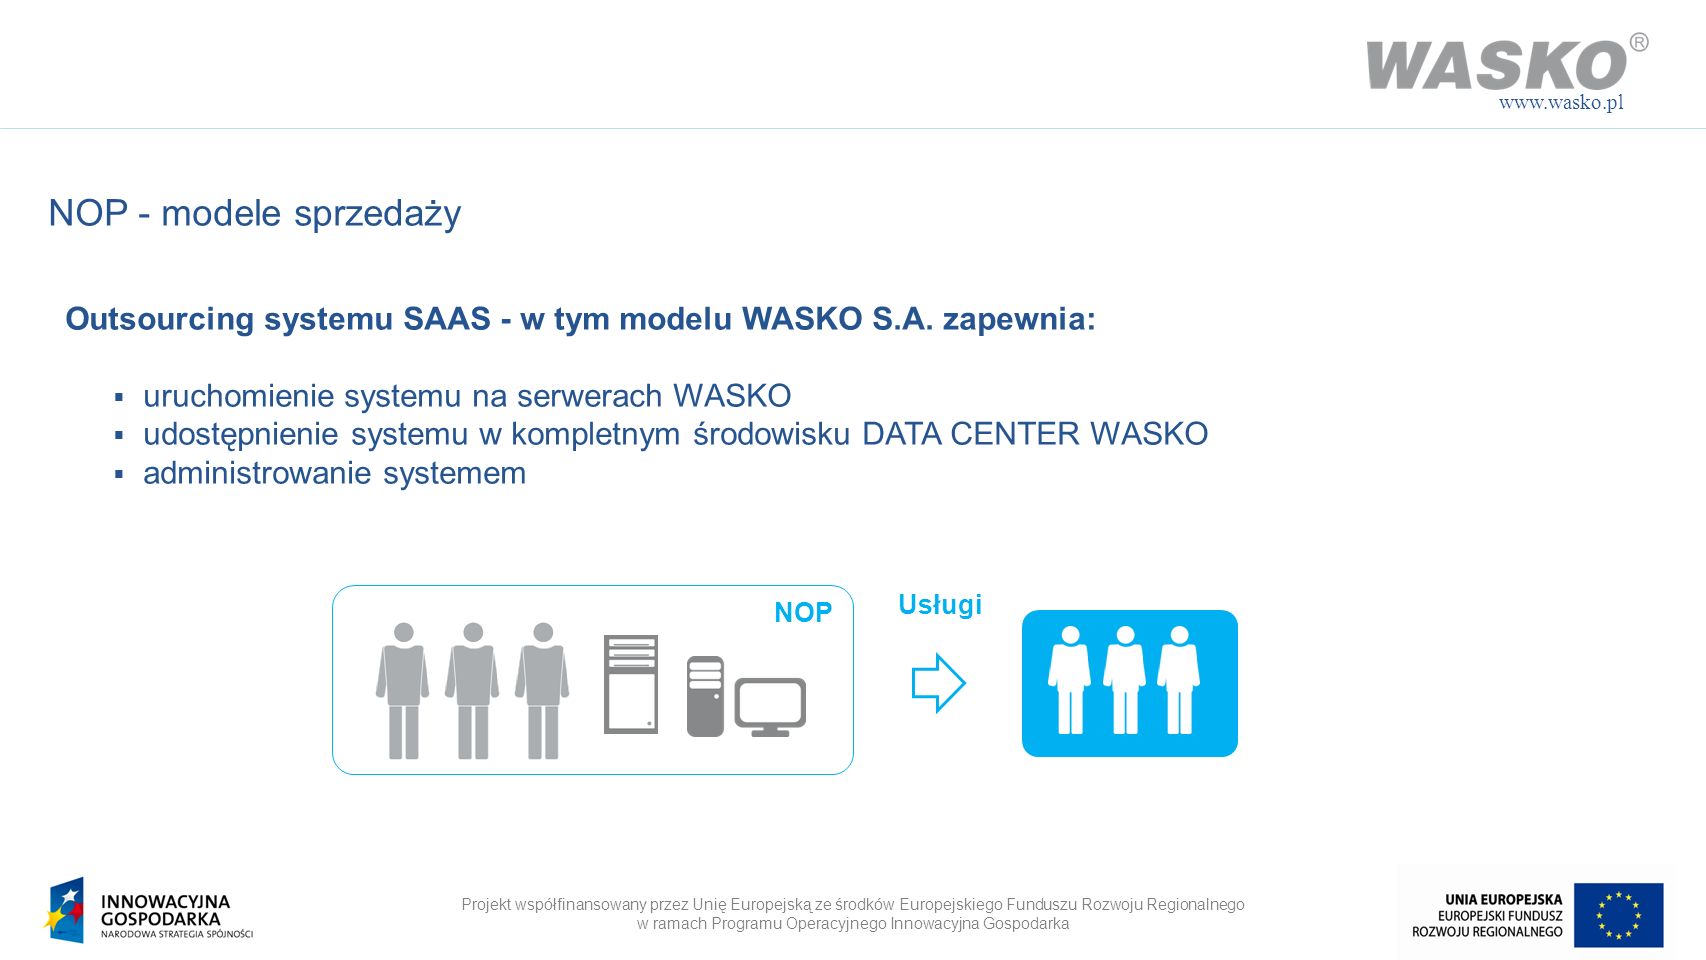 NOP - modele sprzedaży. Outsourcing systemu SAAS - w tym modelu WASKO S.A. zapewnia: uruchomienie systemu na serwerach WASKO.